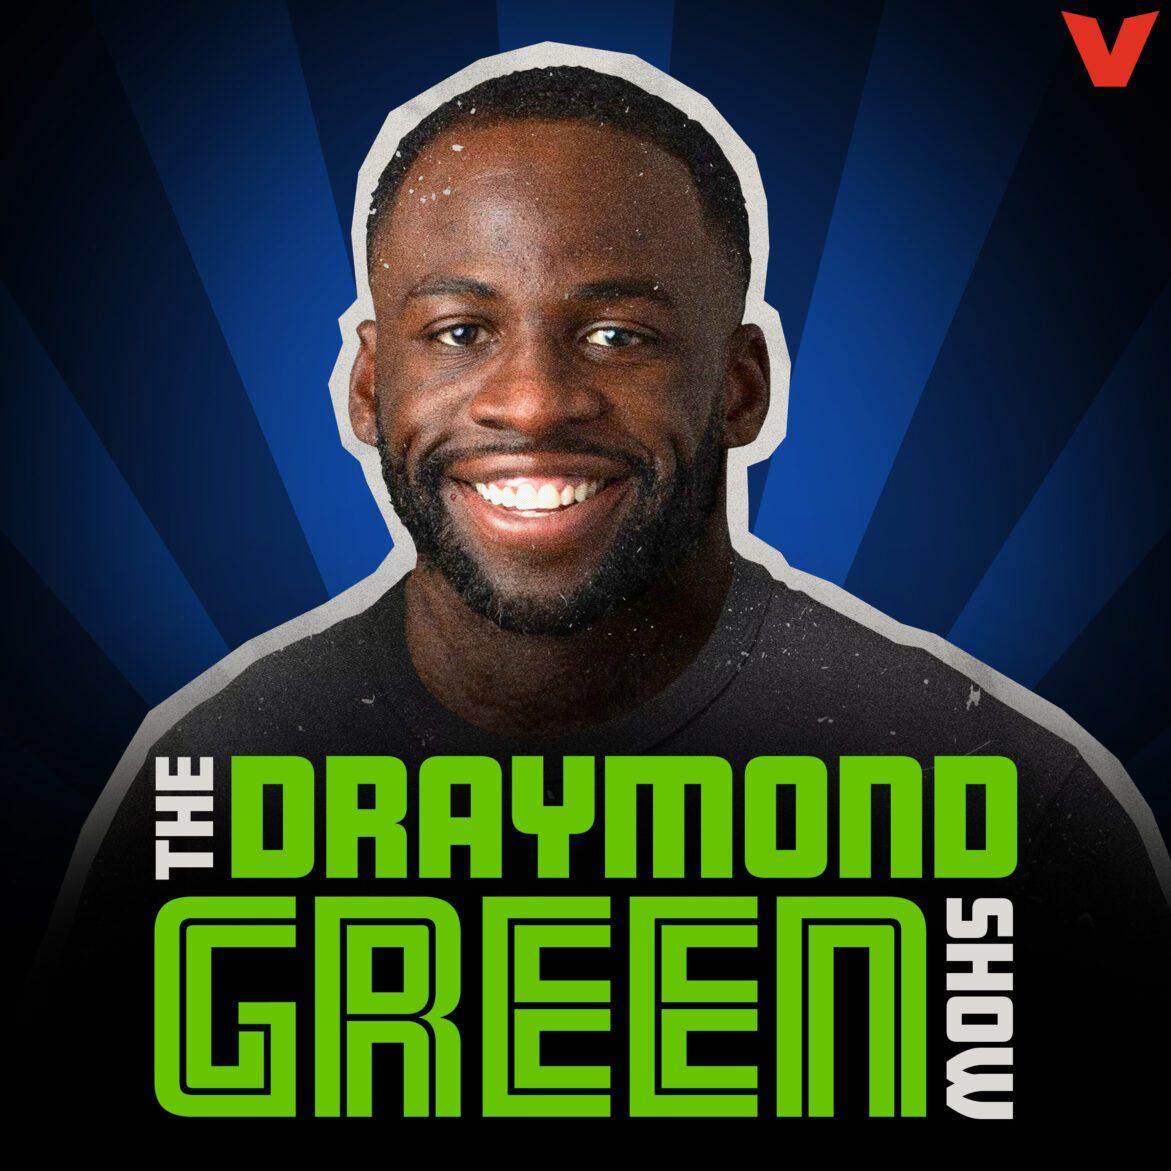 Black Podcasting - The Draymond Green Show - Steve Kerr Helps Break Down Game 2